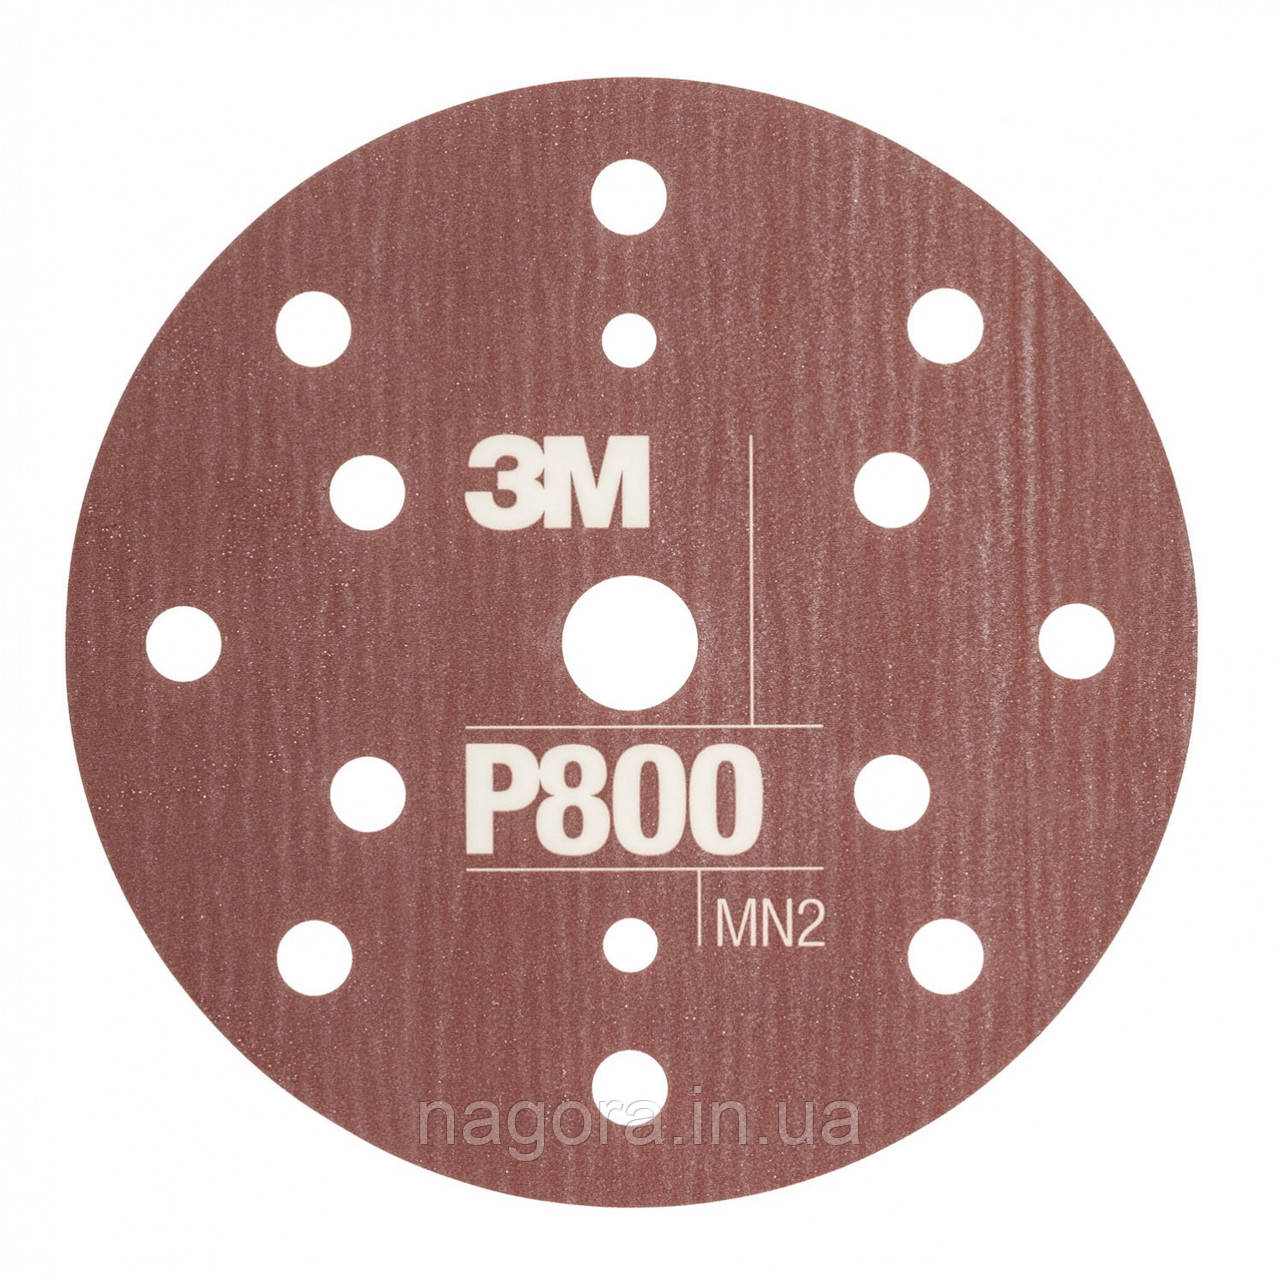 Гнучкі абразивні диски 3MTM HookitTM CROW, d150 мм, 15 відв. P800